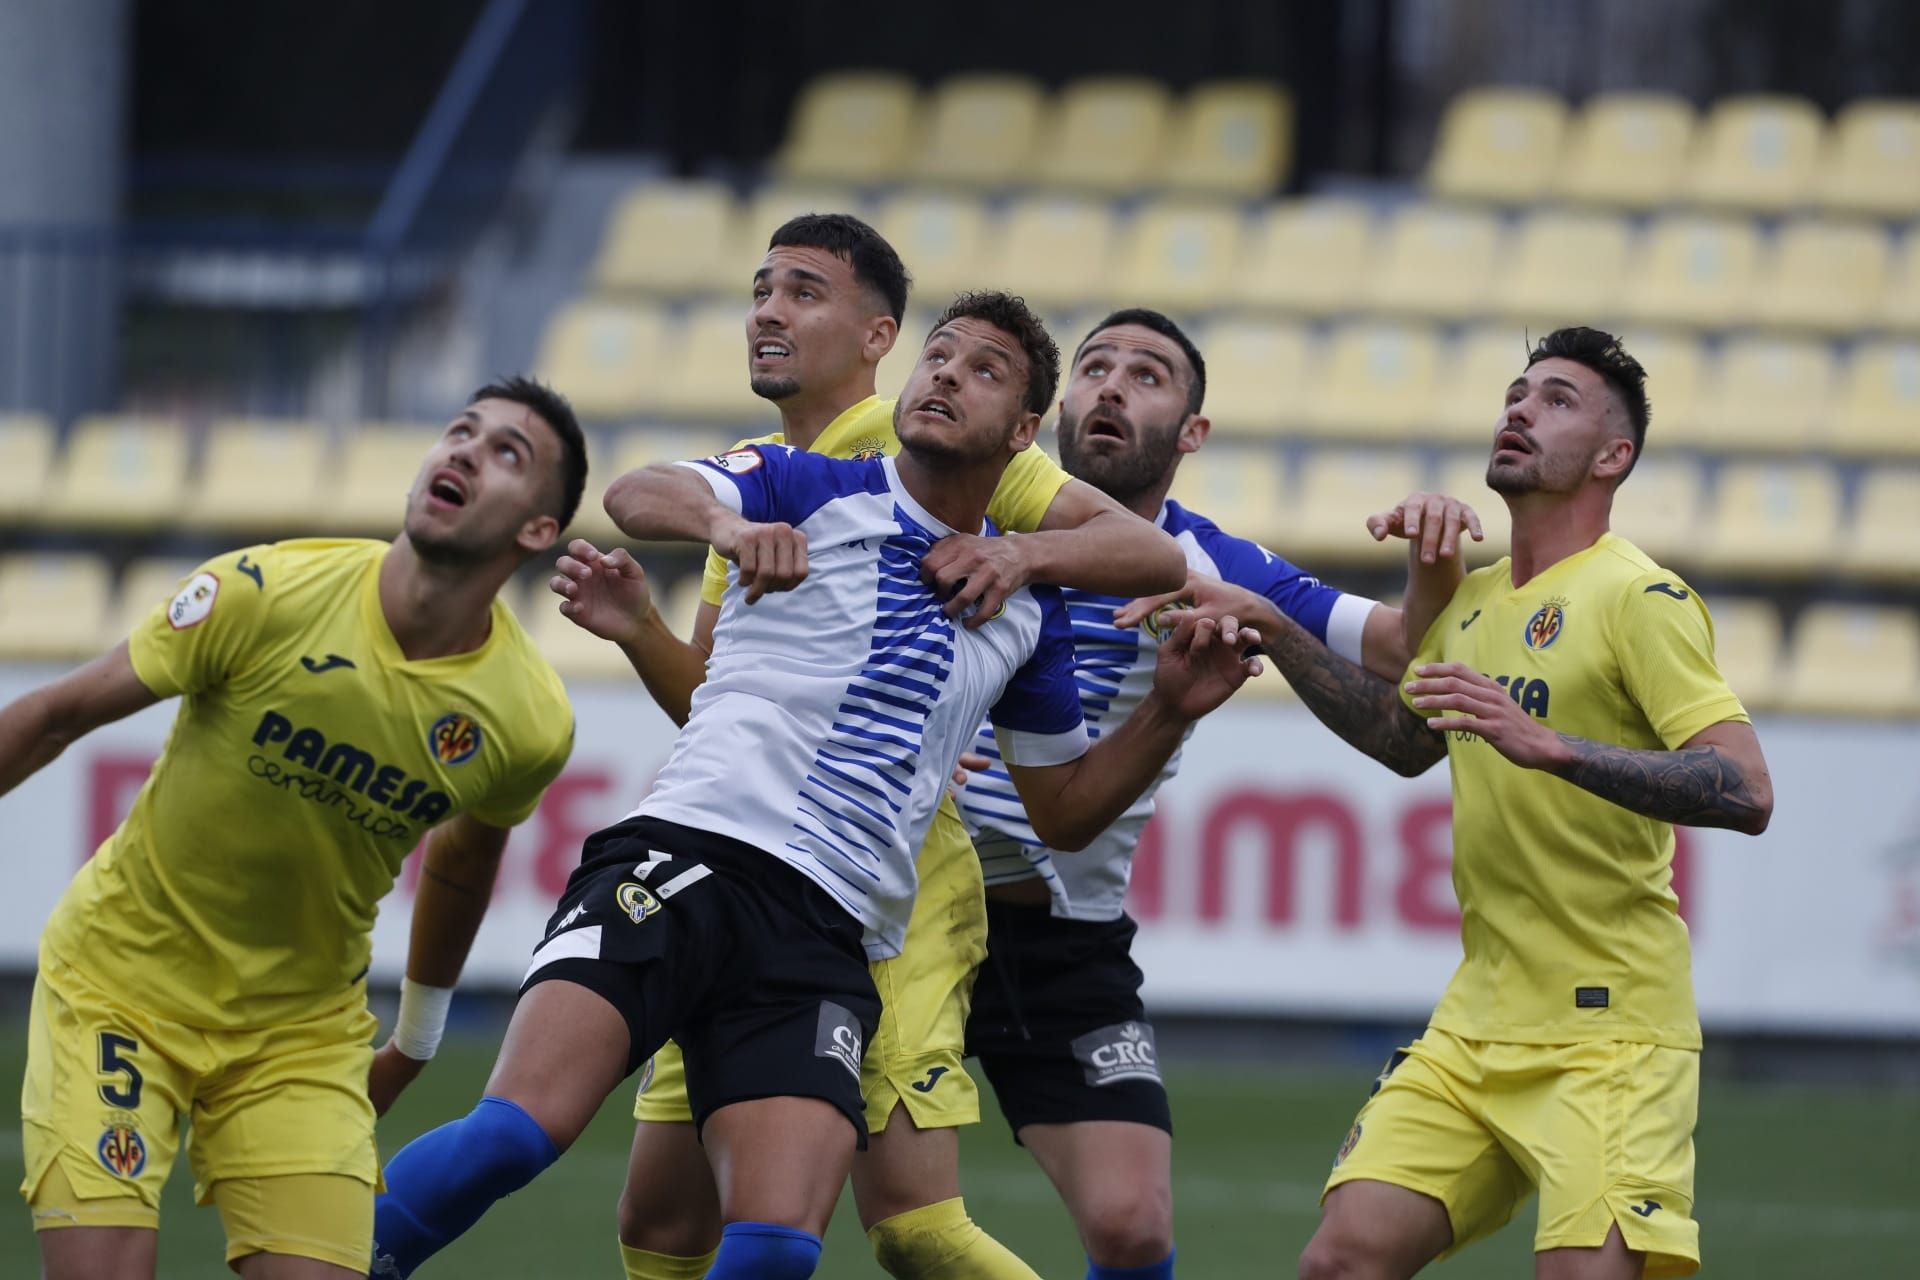 Villarreal B - Hércules: Las imágenes del partido